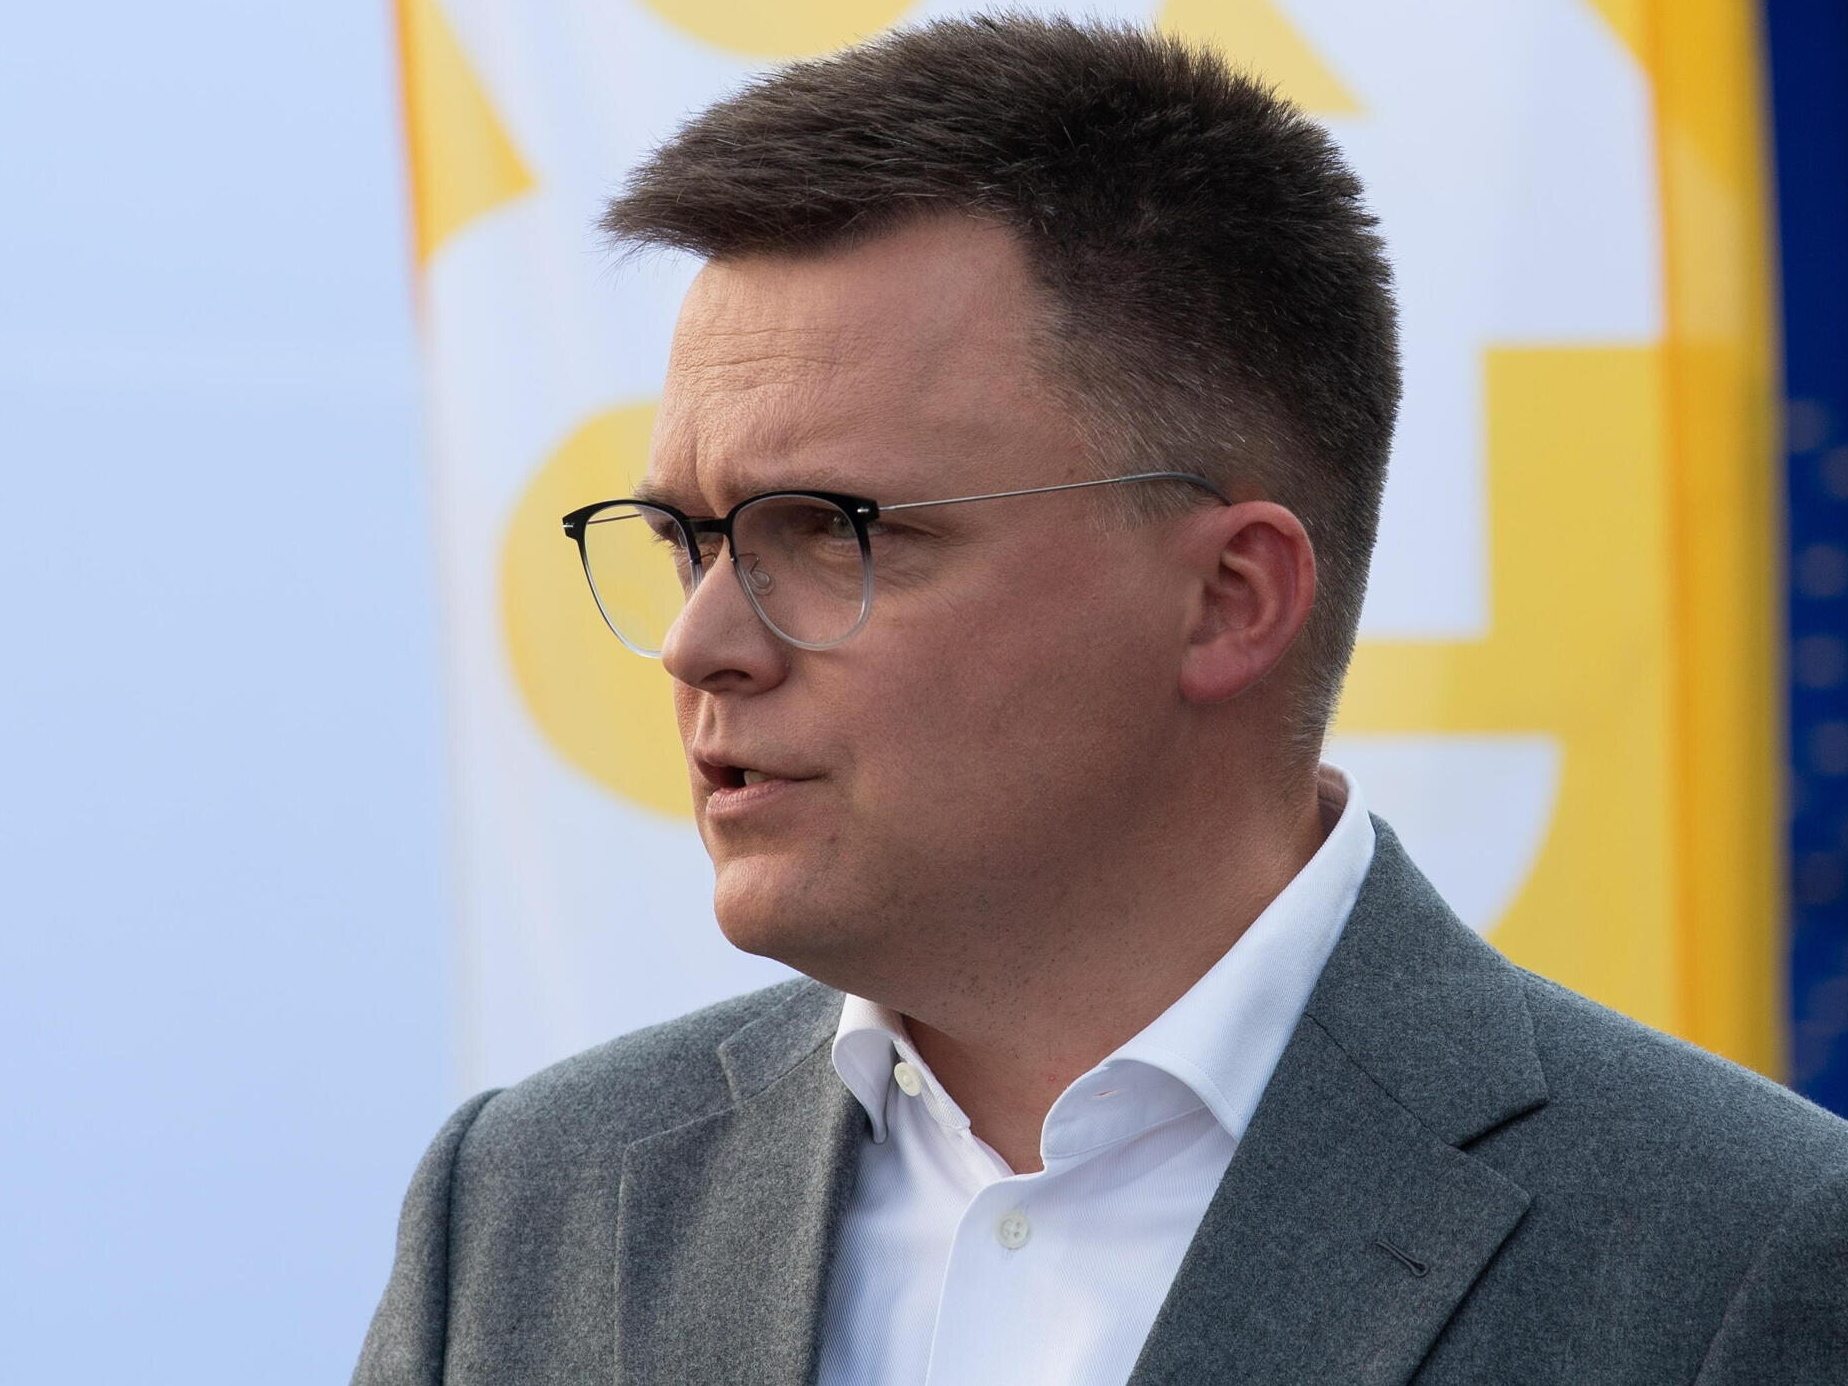 Szymon Hołownia quiere una moción de censura al primer ministro